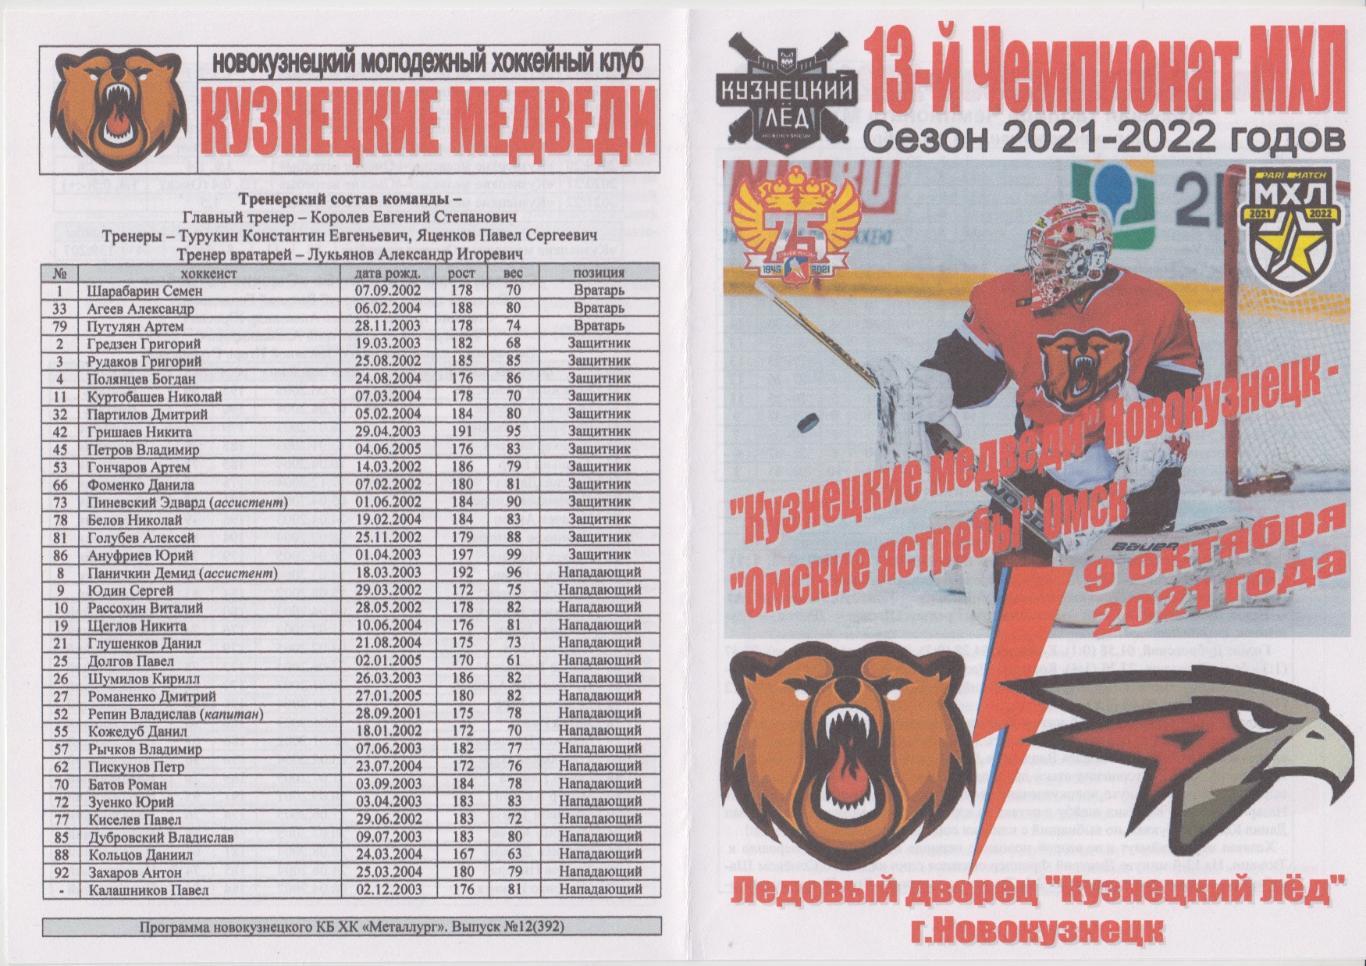 Кузнецкие медведи(Новокузнецк) - Омские ястребы(Омск) - 2021/22 - 2